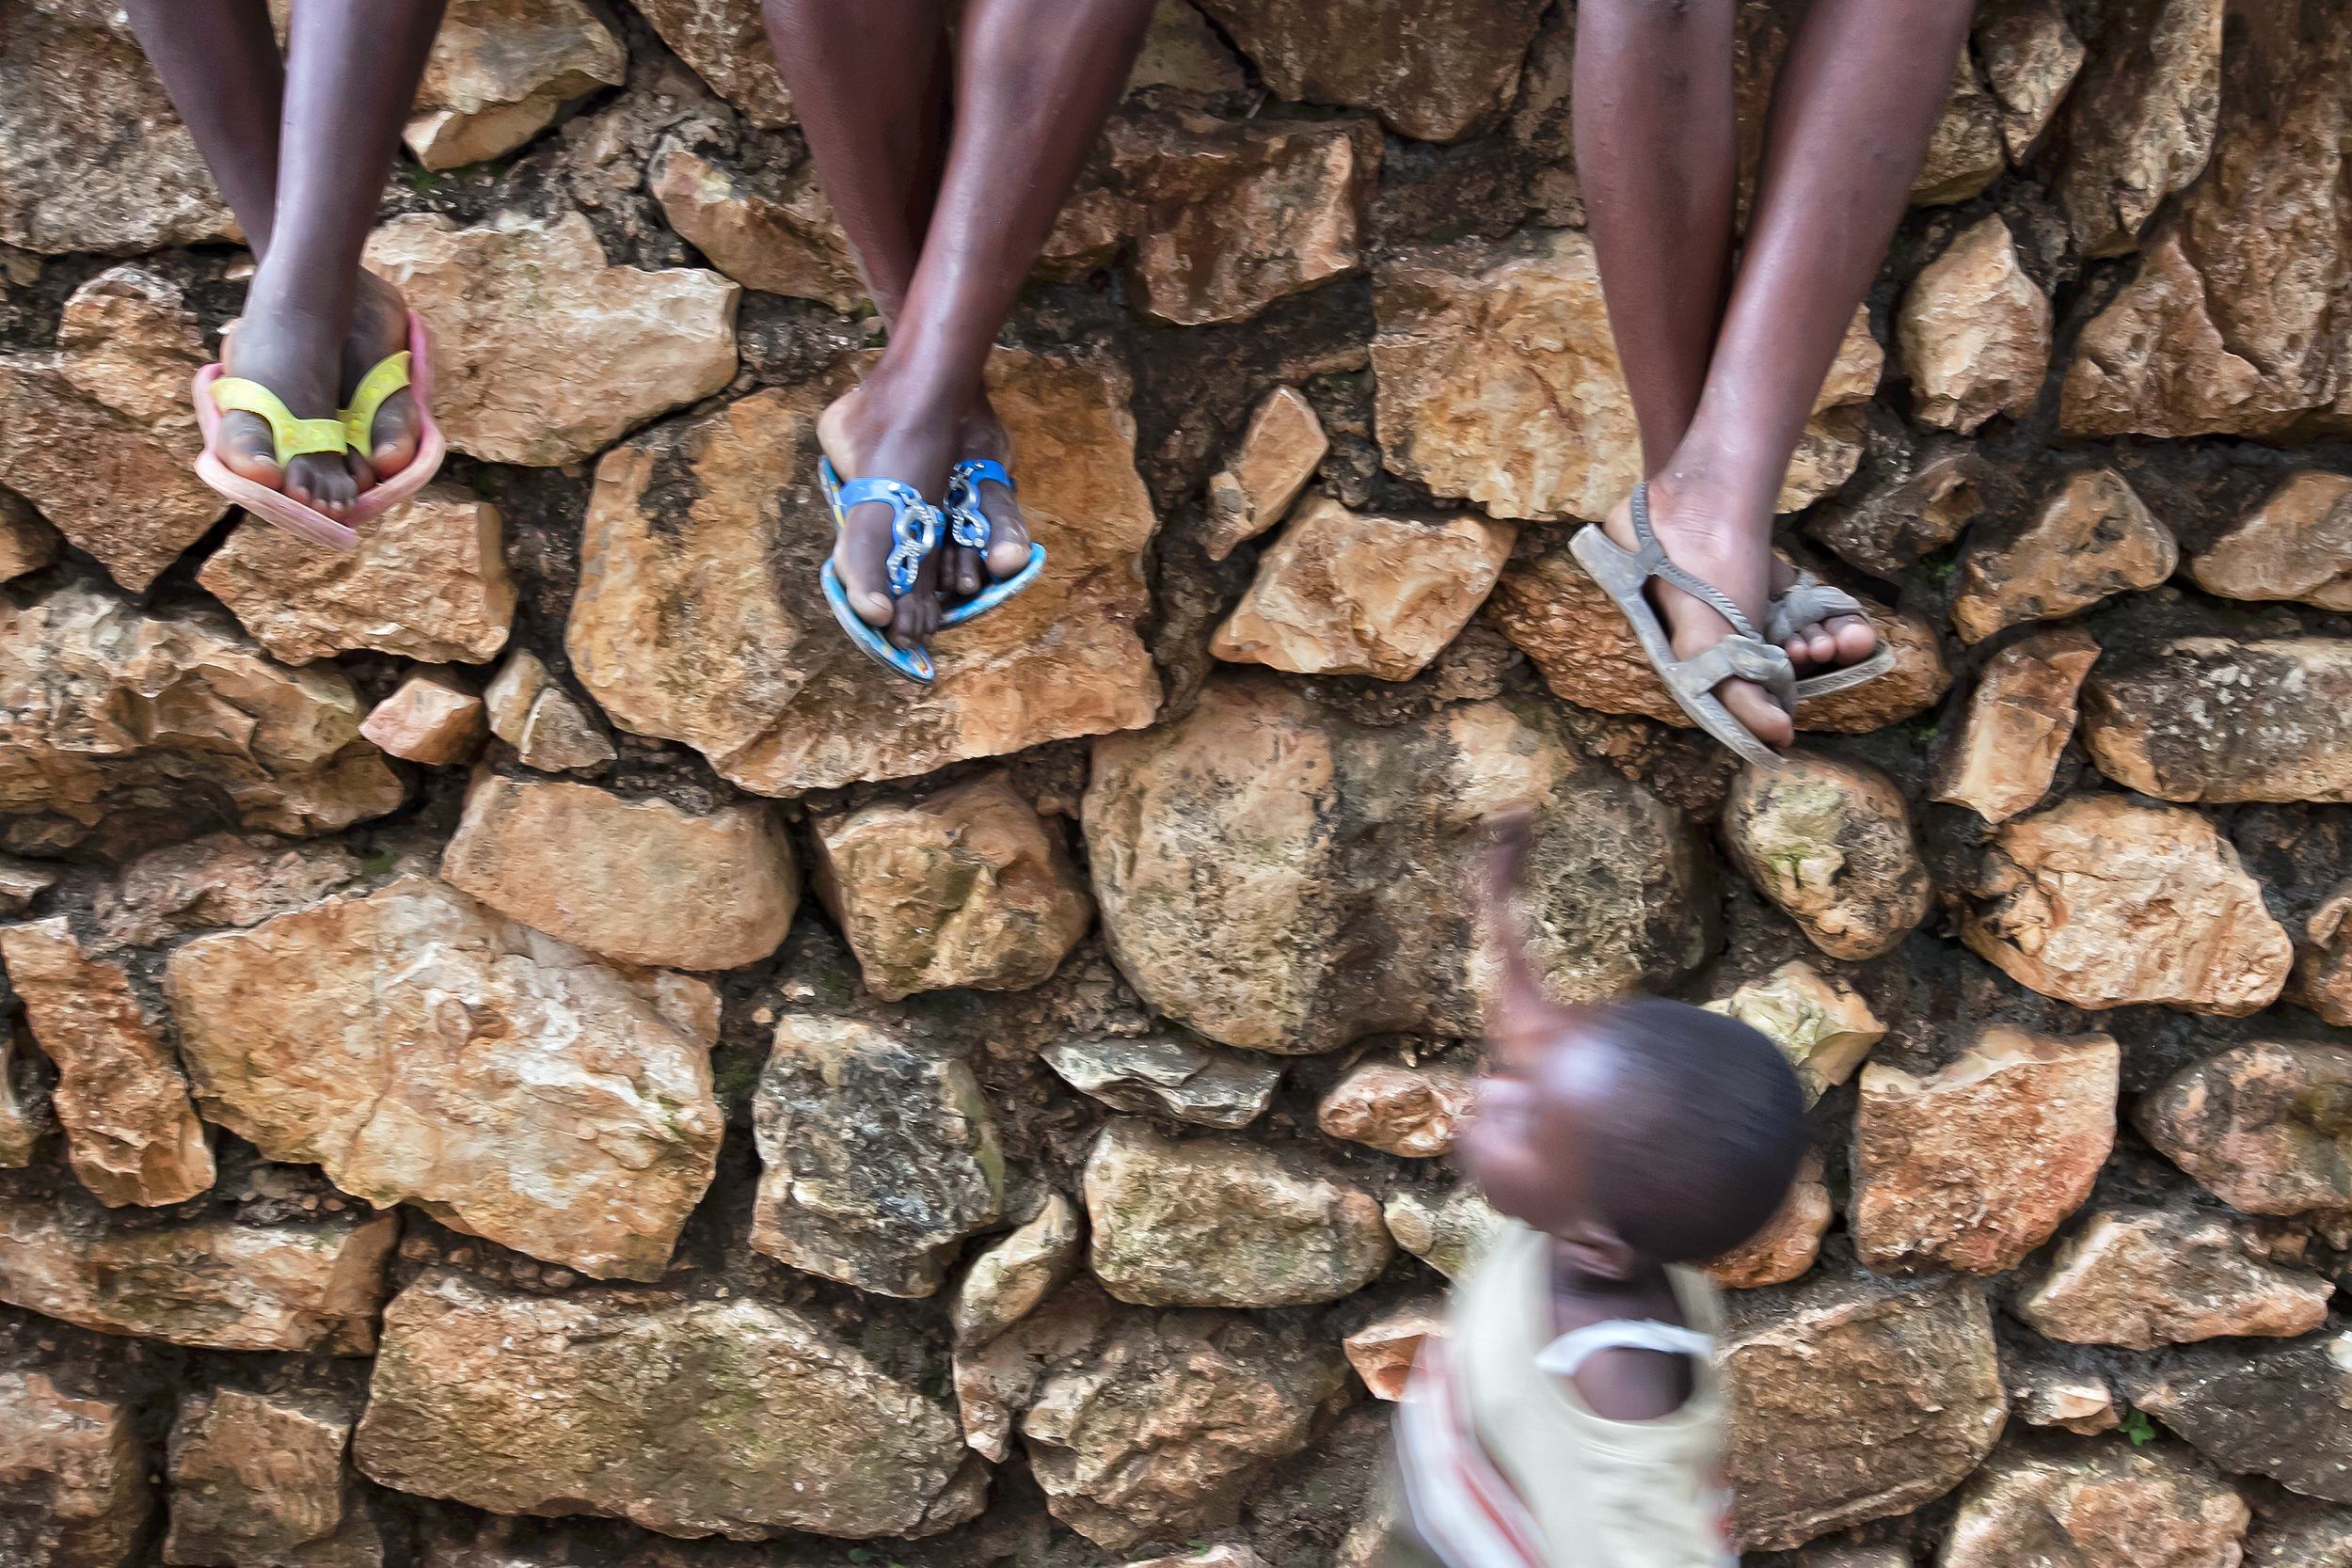  Shoes worn by Haitian children are often worn or broken. 